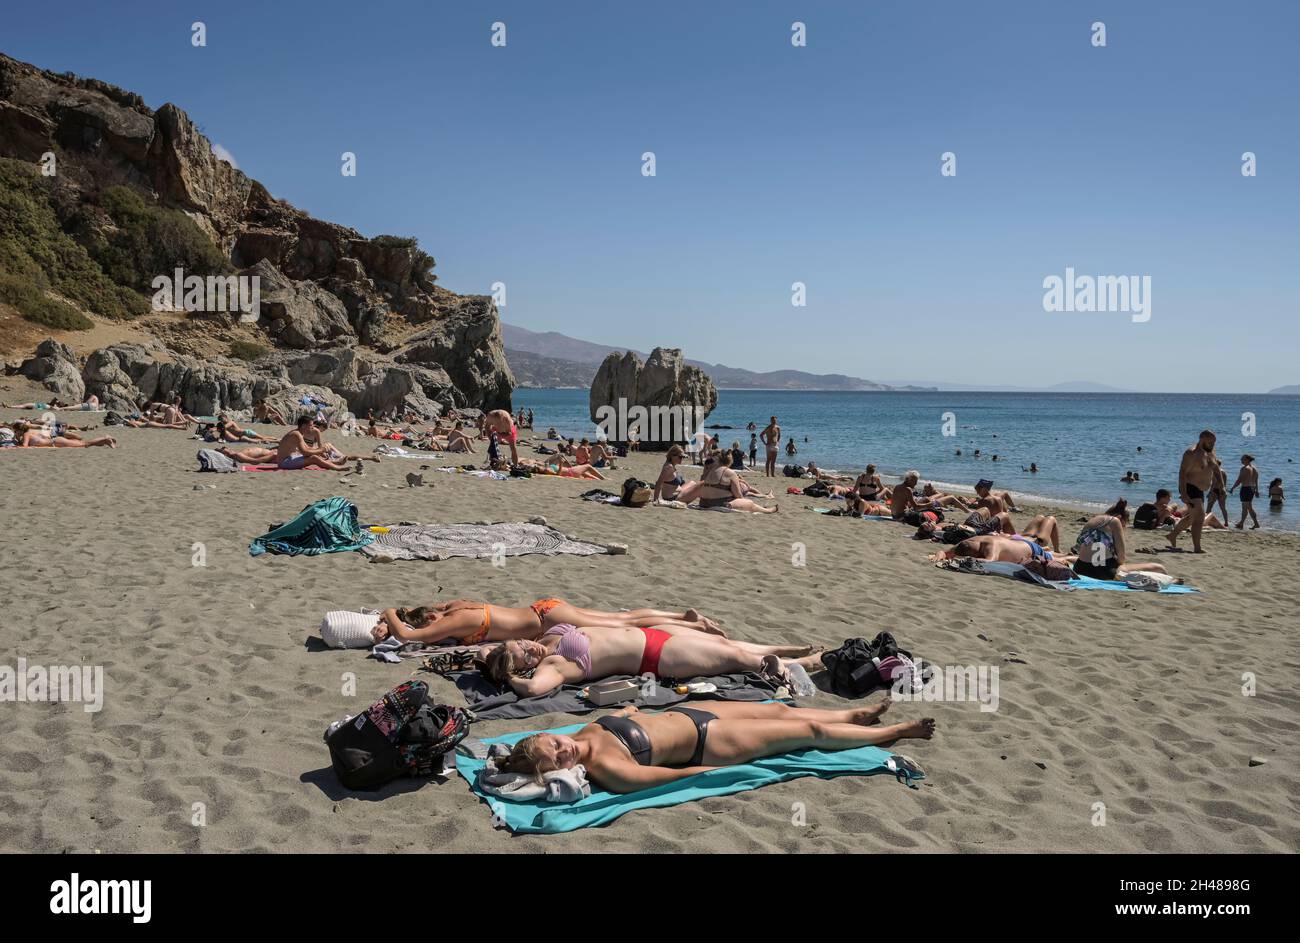 Sandstrand, Sonnenbaden, Urlauber, Touristen, Preveli,Kreta, Griechenland Banque D'Images